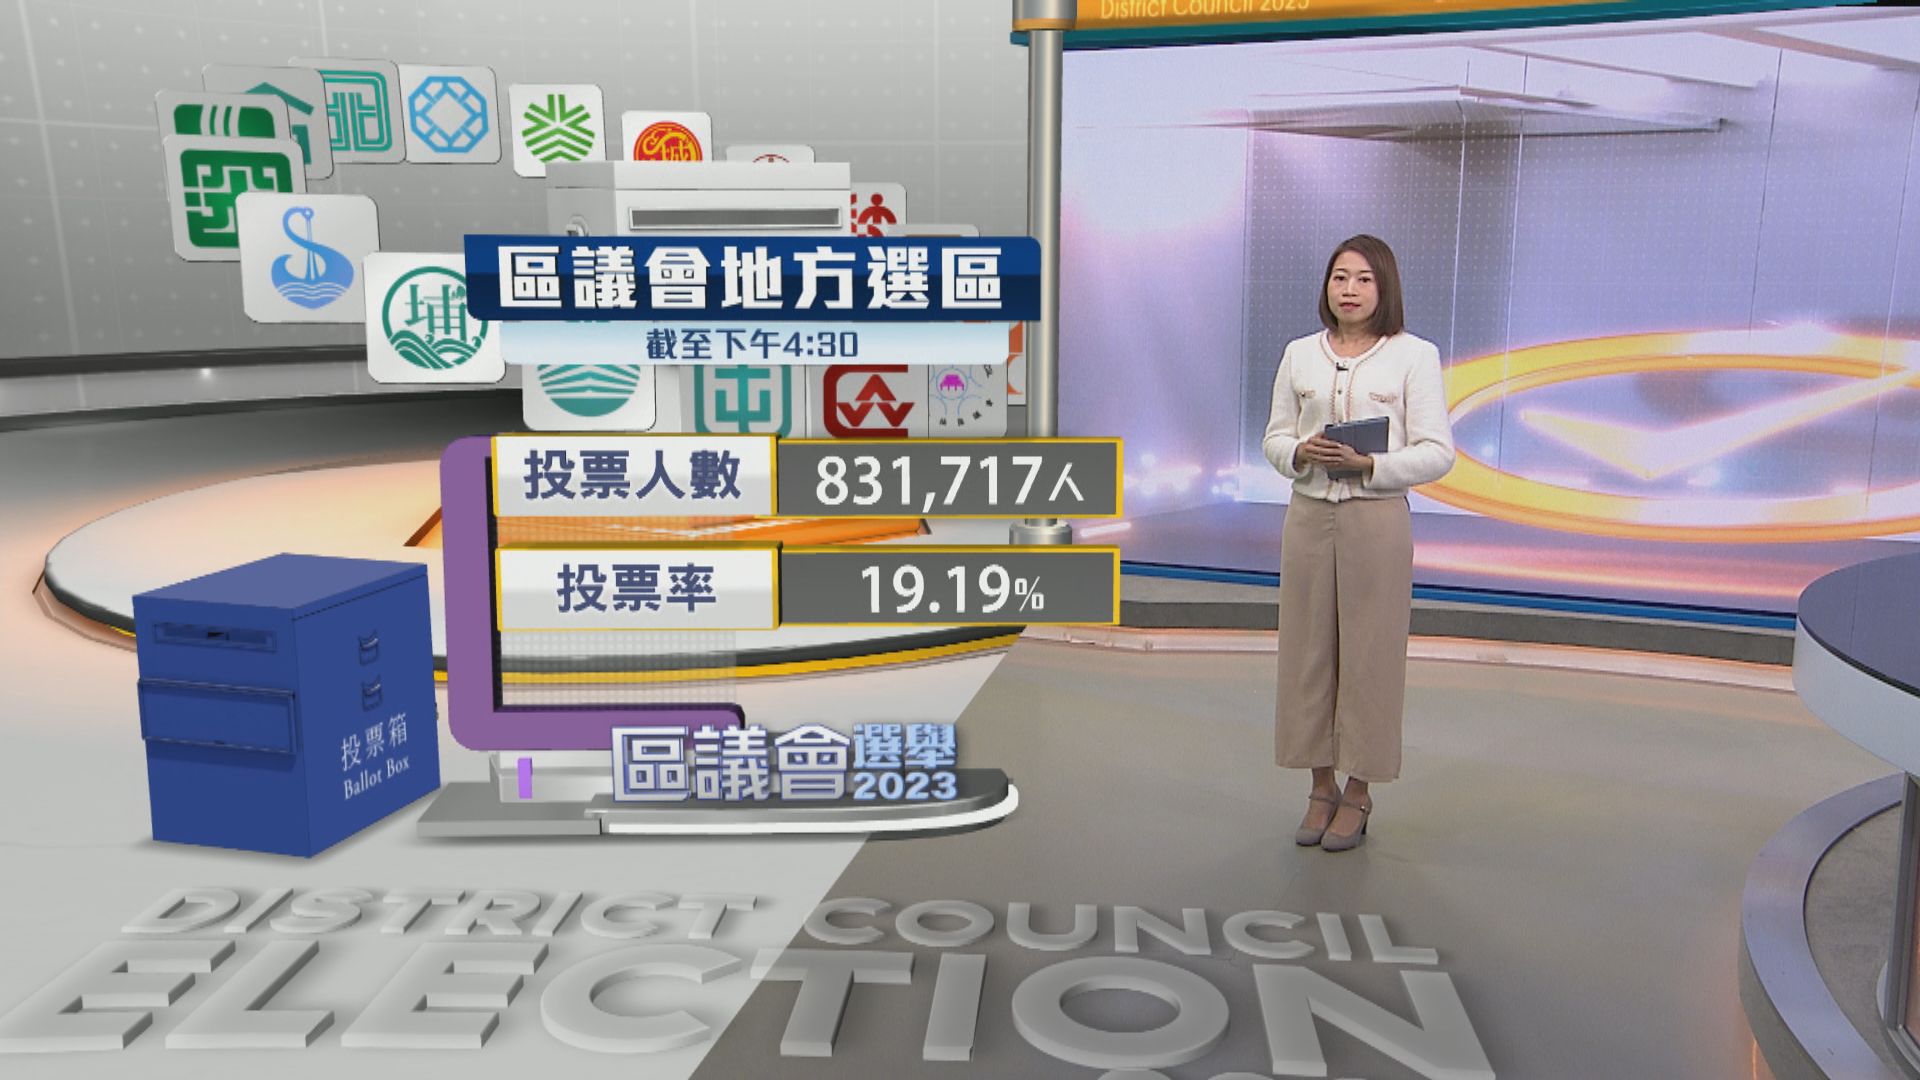 【區議會選舉】截至下午四時半 逾83萬人投票 投票率19.19%